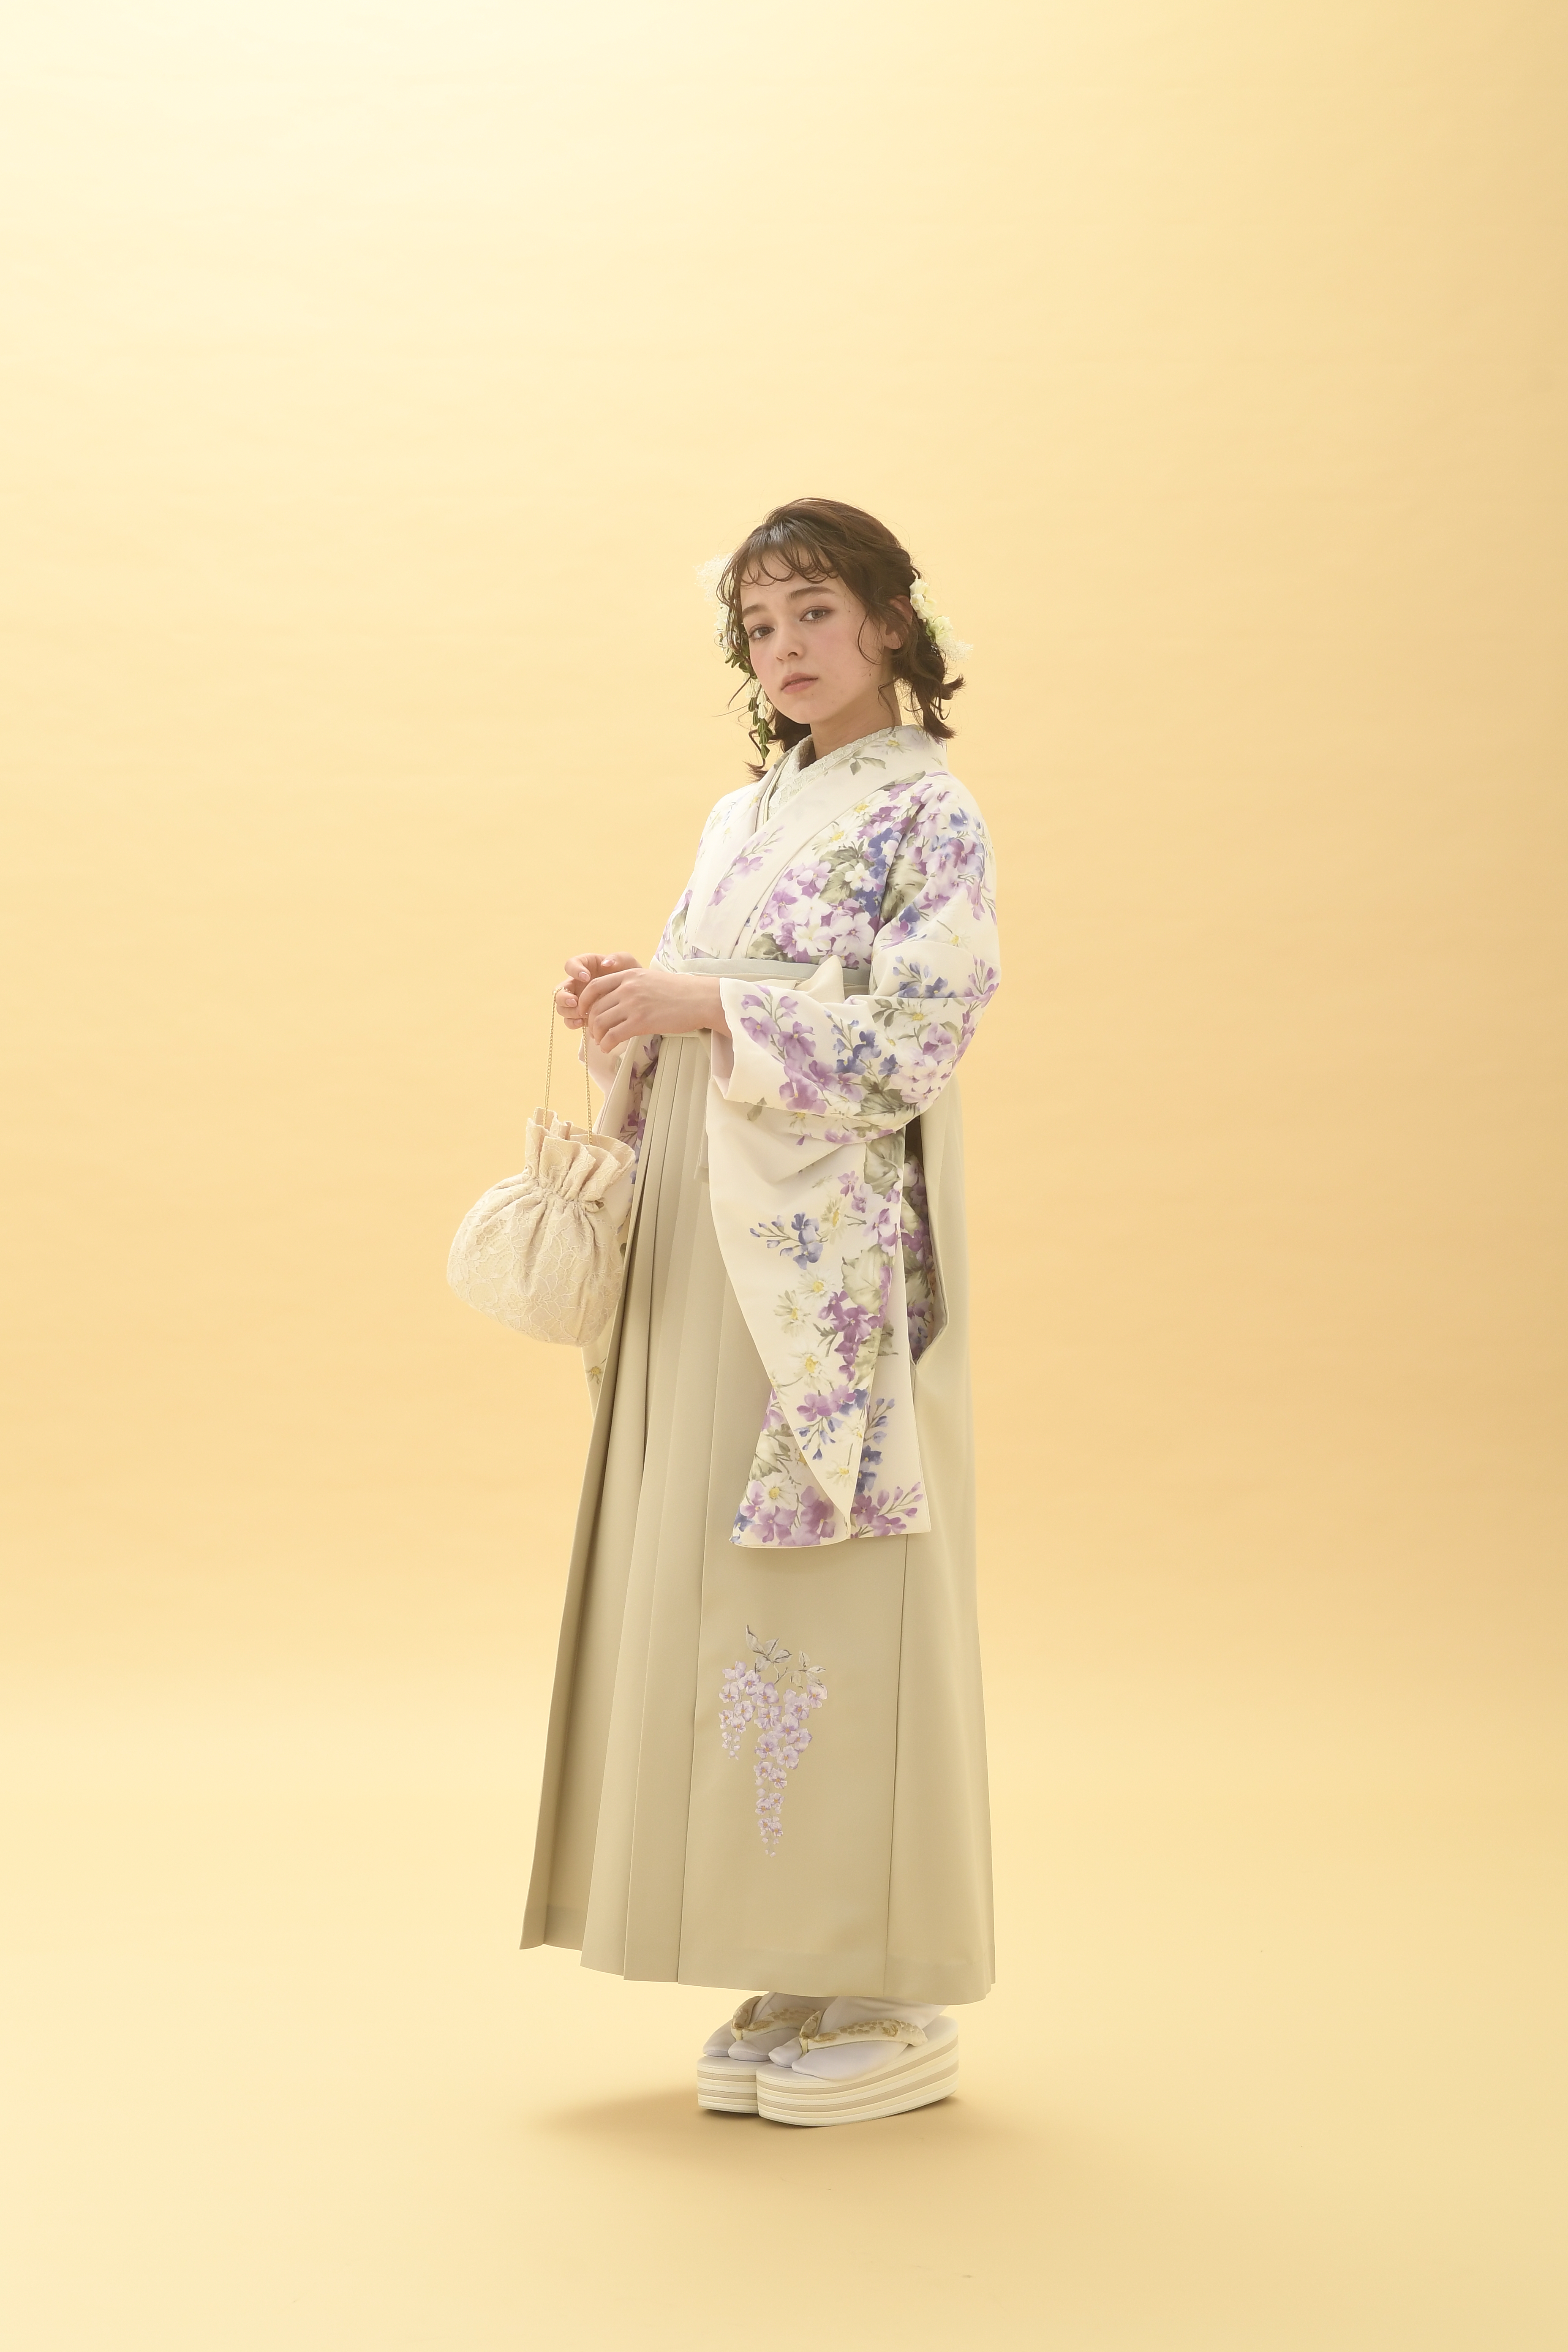 シュガーKブランドの、クリーム地に小花柄の二尺袖と、クリーム色の袴の女性用卒業式袴を着用した全身写真